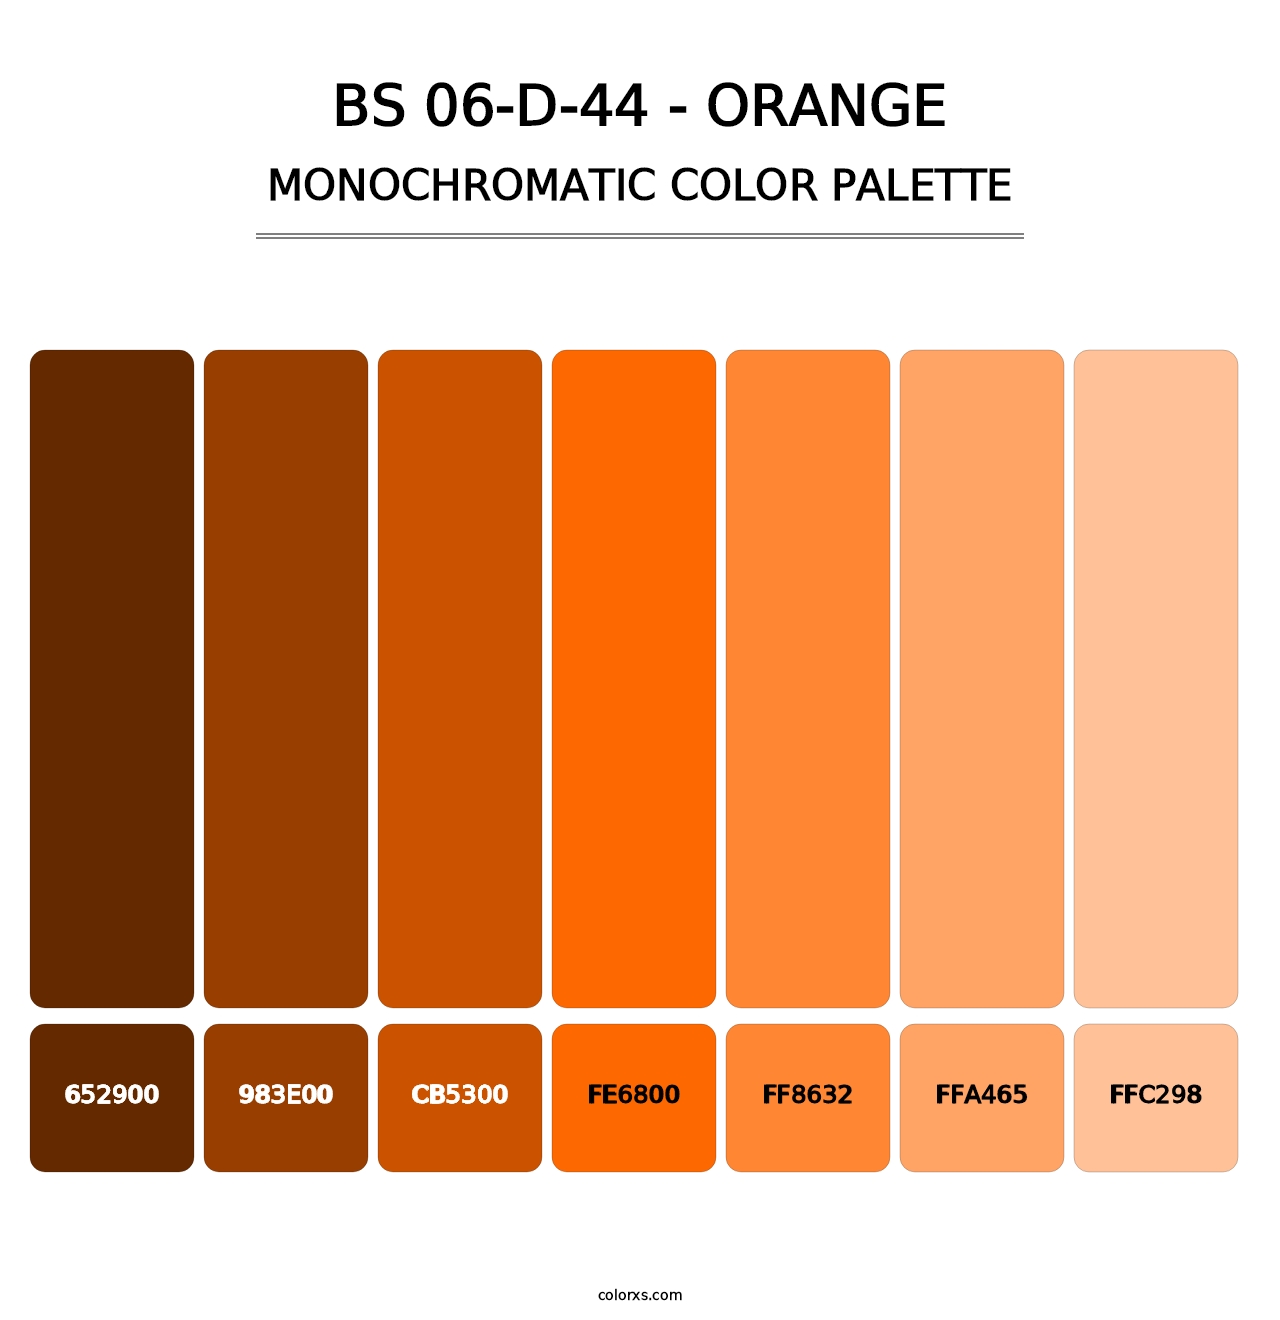 BS 06-D-44 - Orange - Monochromatic Color Palette